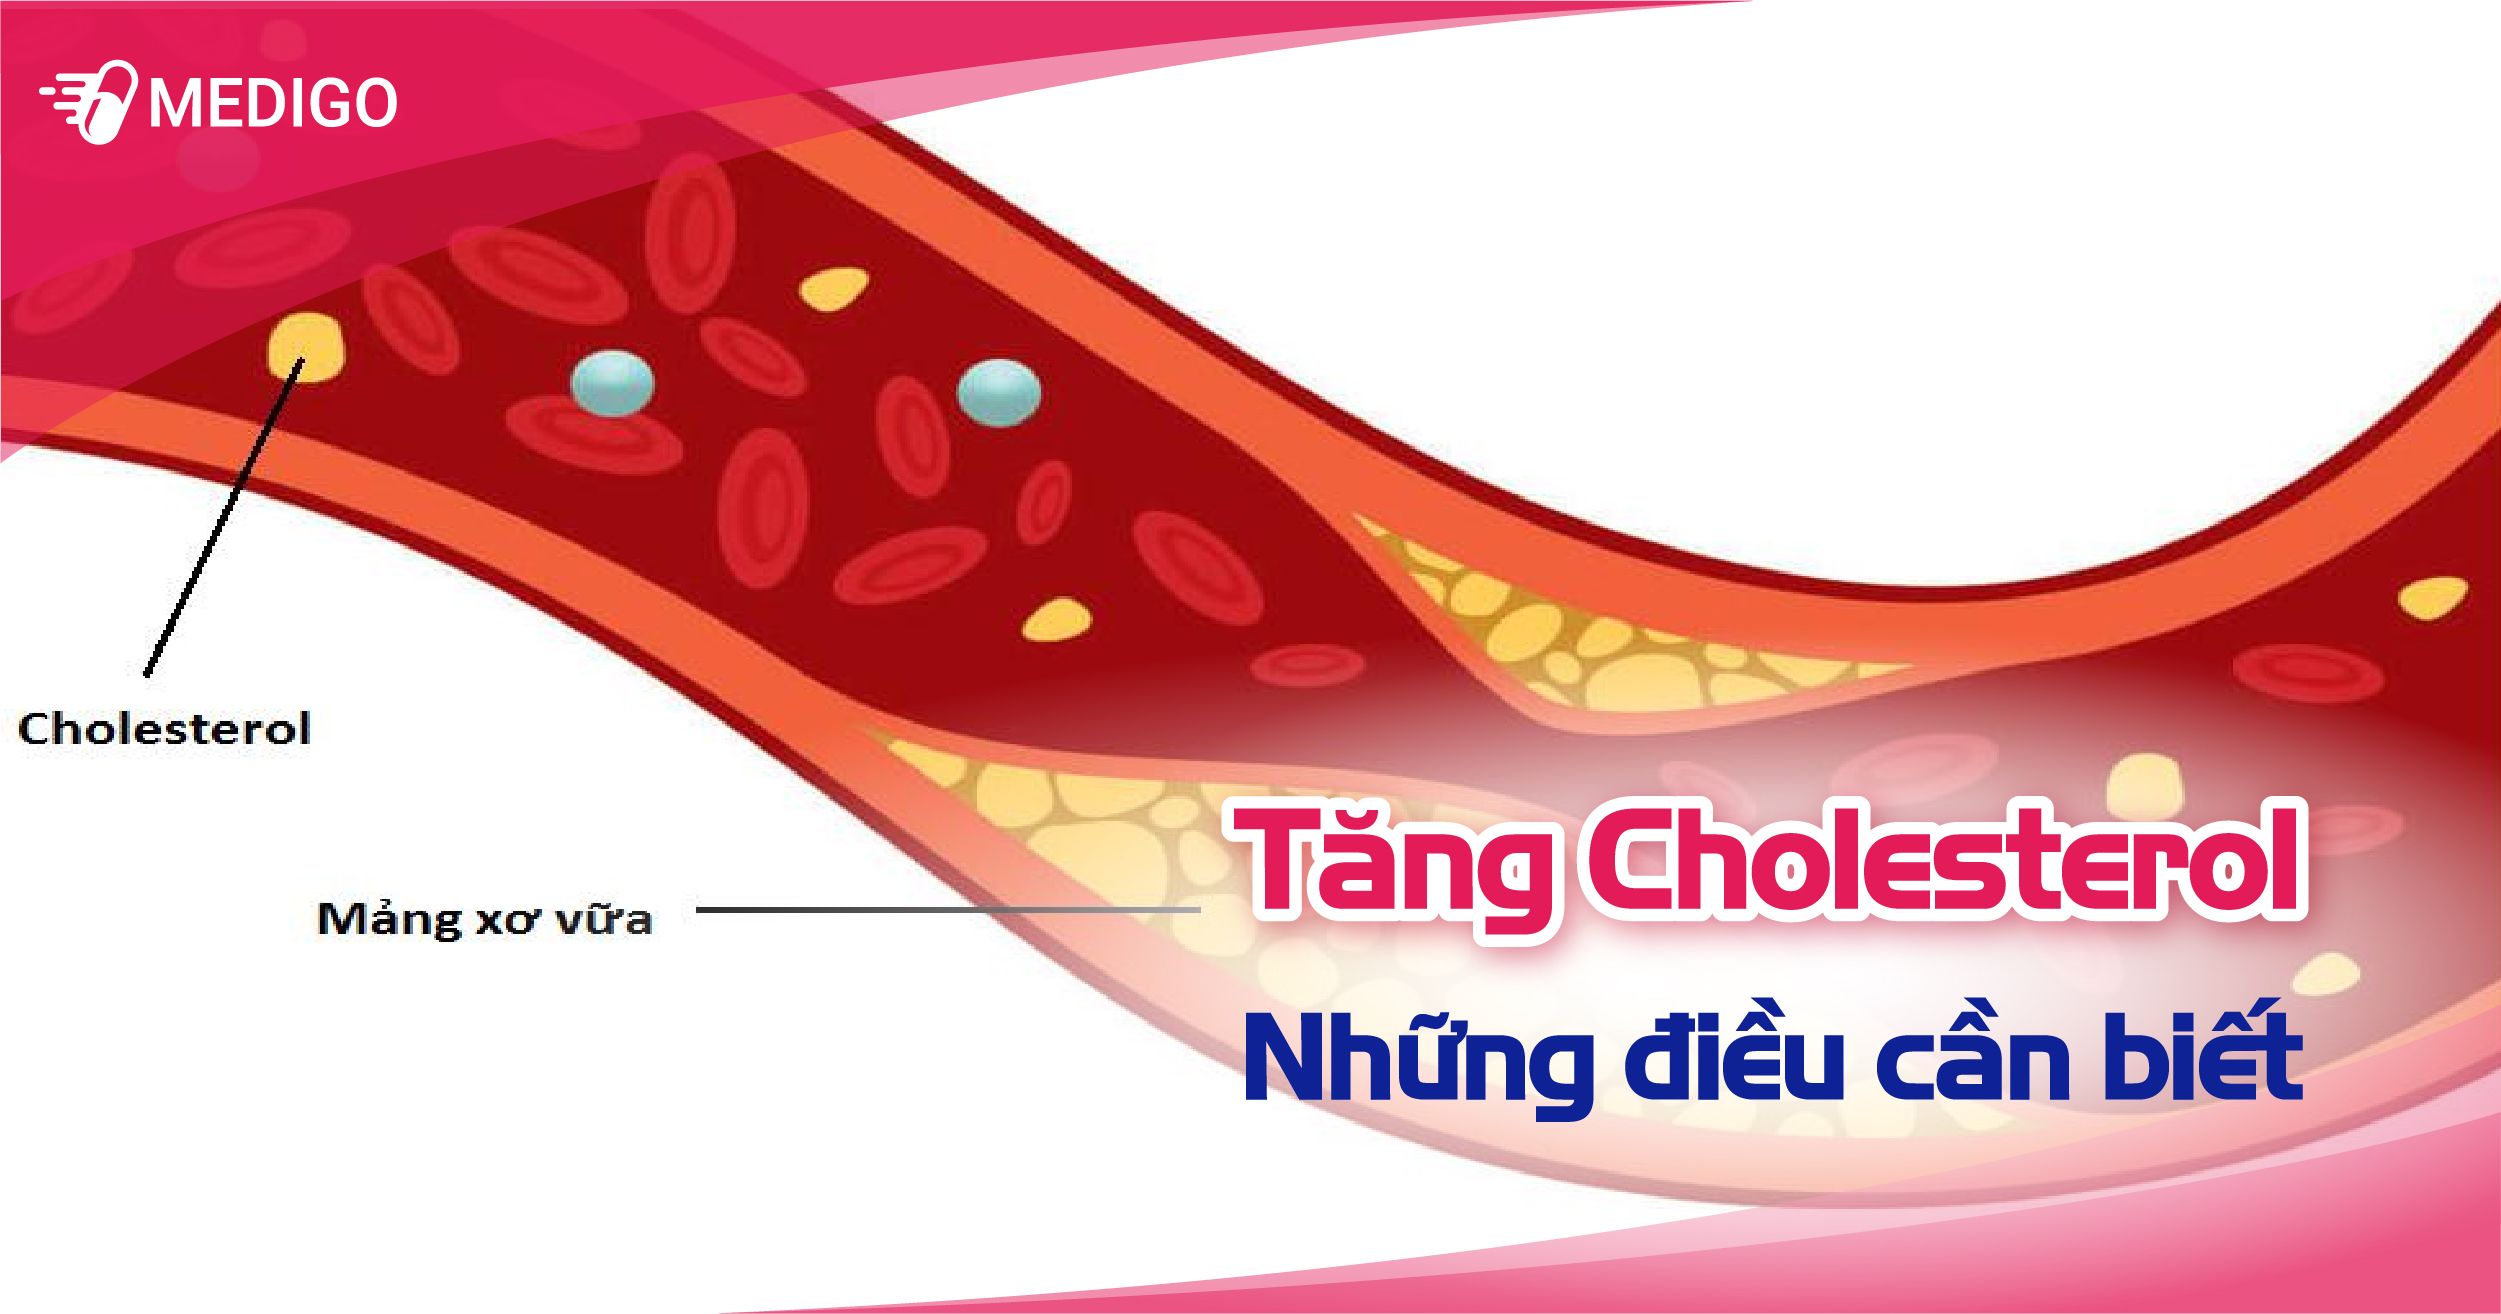 Tăng Cholesterol: Nguyên nhân, biểu hiện, chuẩn đoán và điều trị